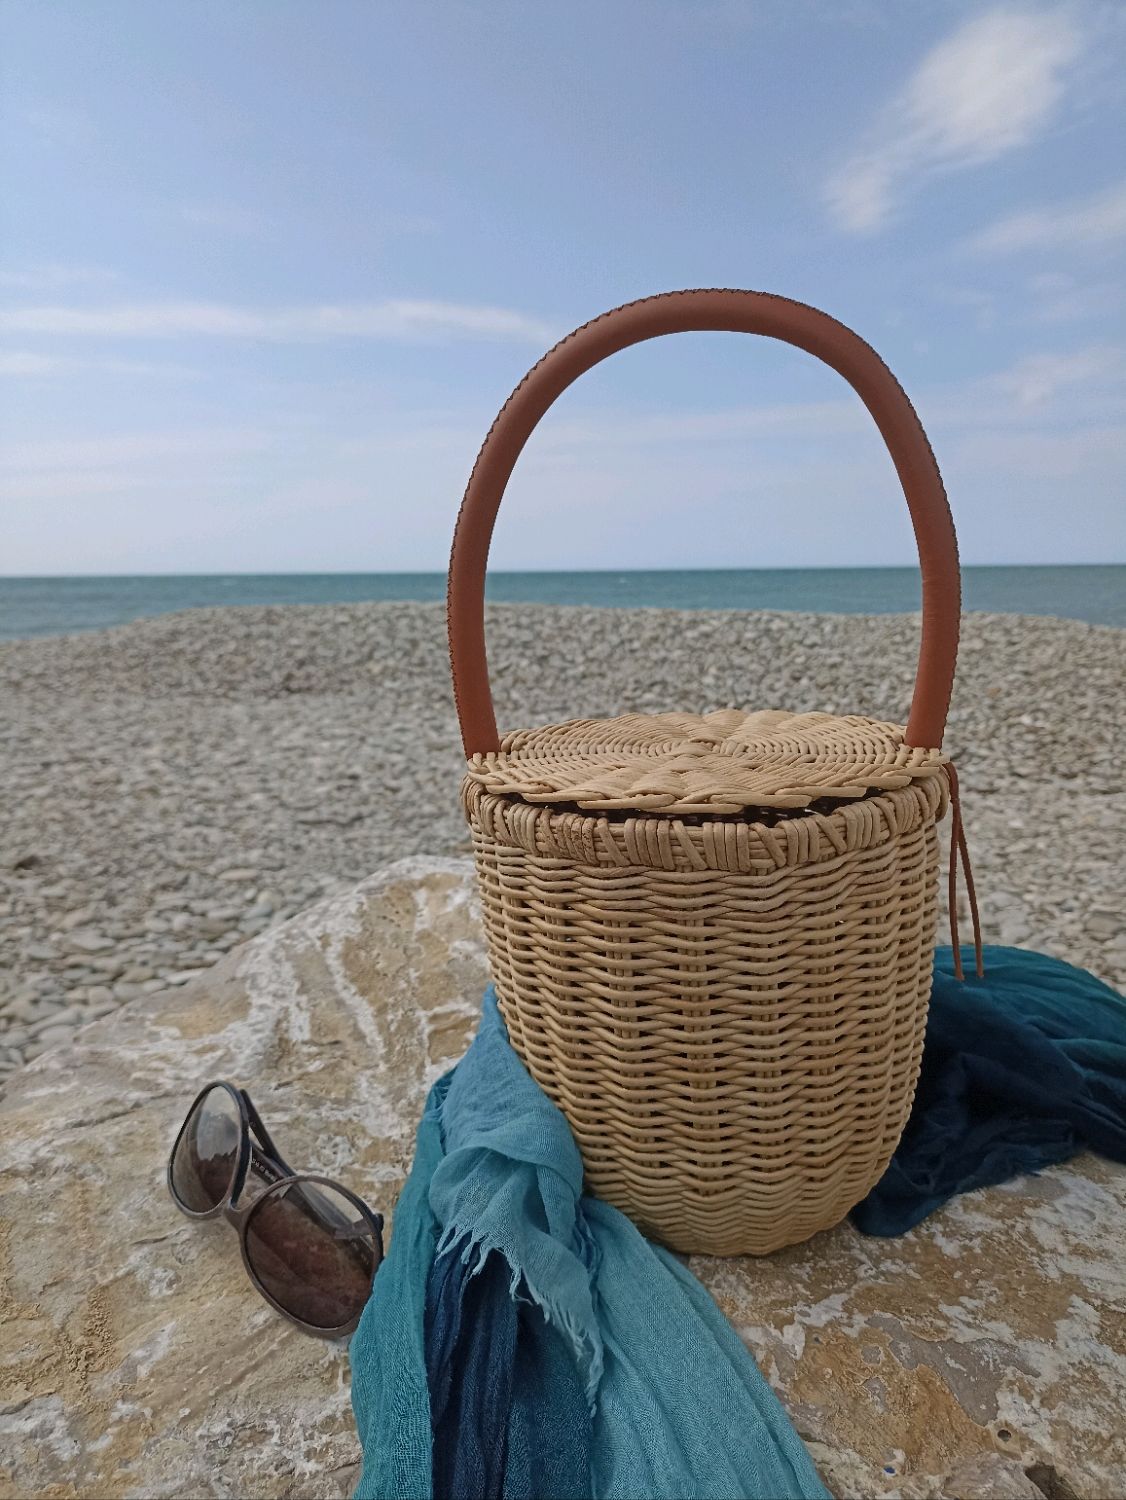 Летняя плетеная сумка-корзинка соломенного цвета, пляжная сумка, бохо, Сумка-торба, Туапсе,  Фото №1